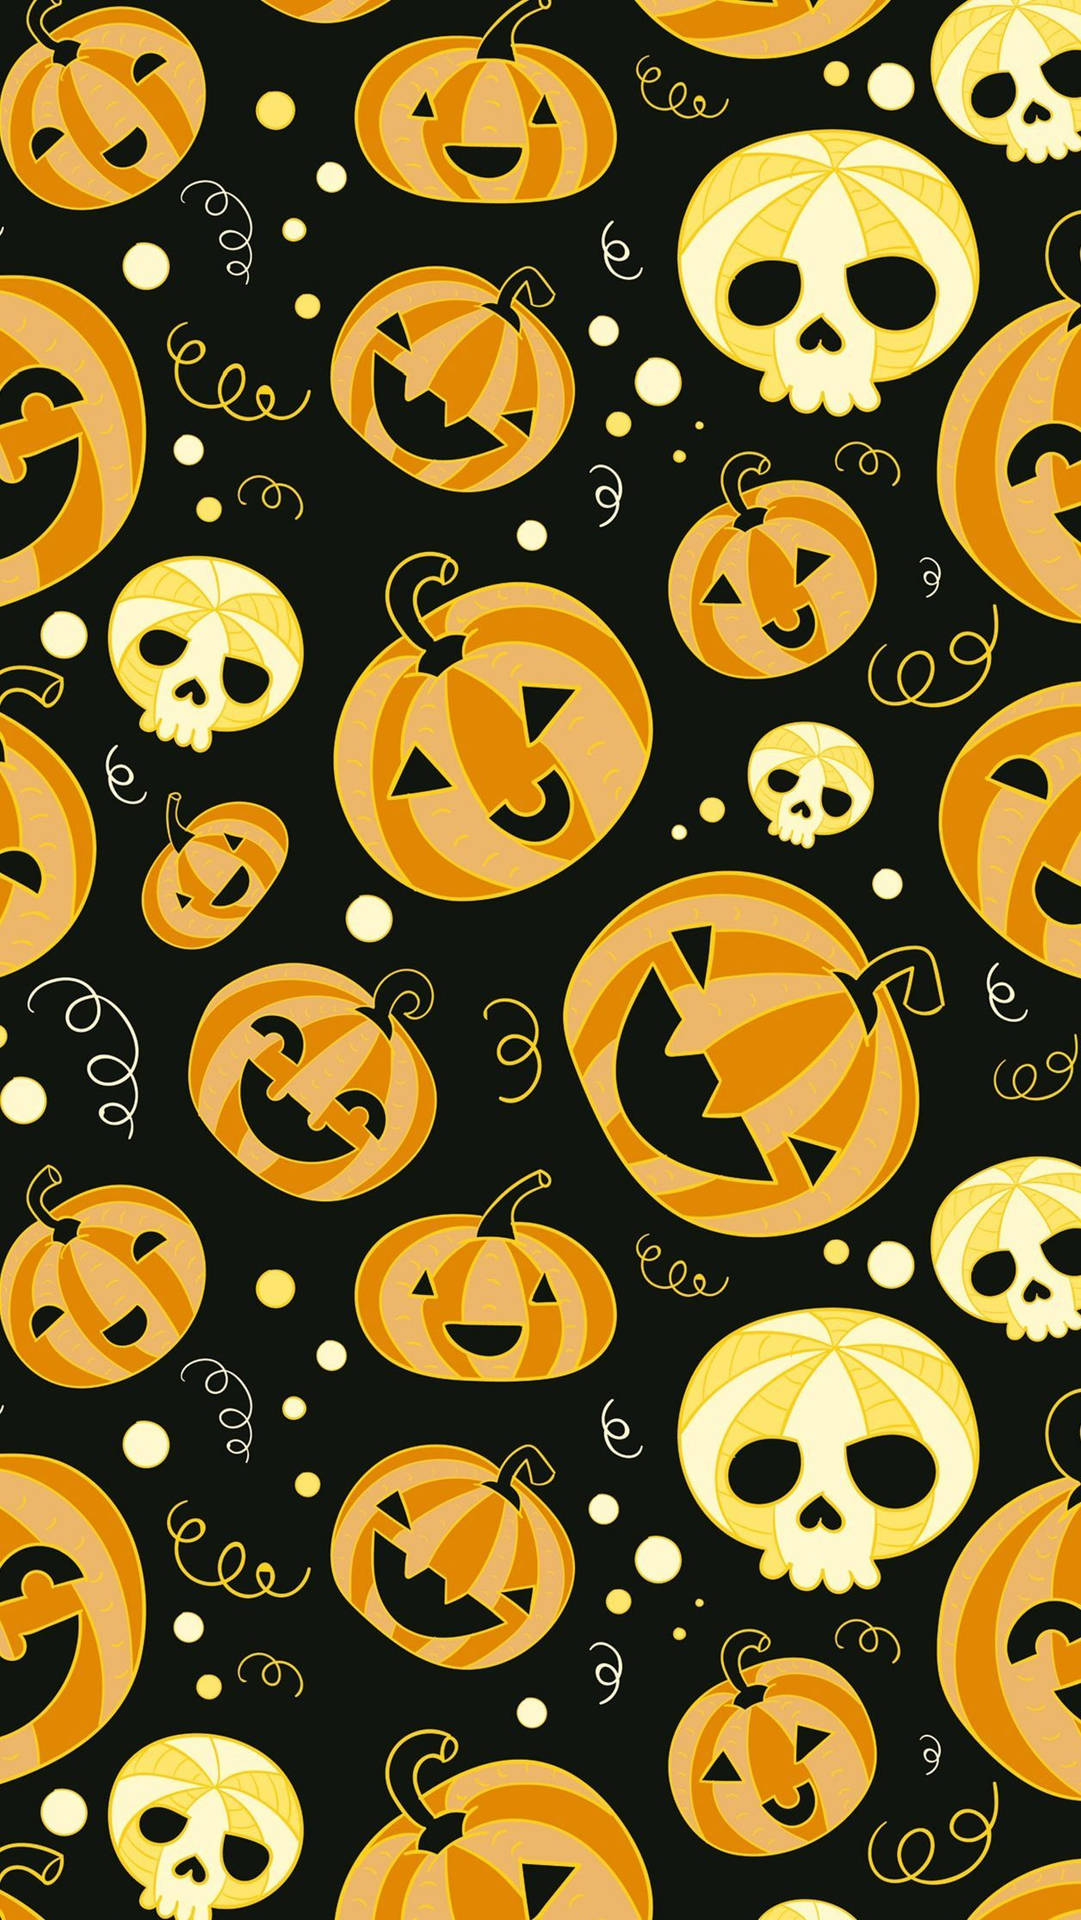 Fålite Spökstämning Inför Halloween Med En Modern Touch På Din Datorskärm Eller Mobilbakgrund! Wallpaper